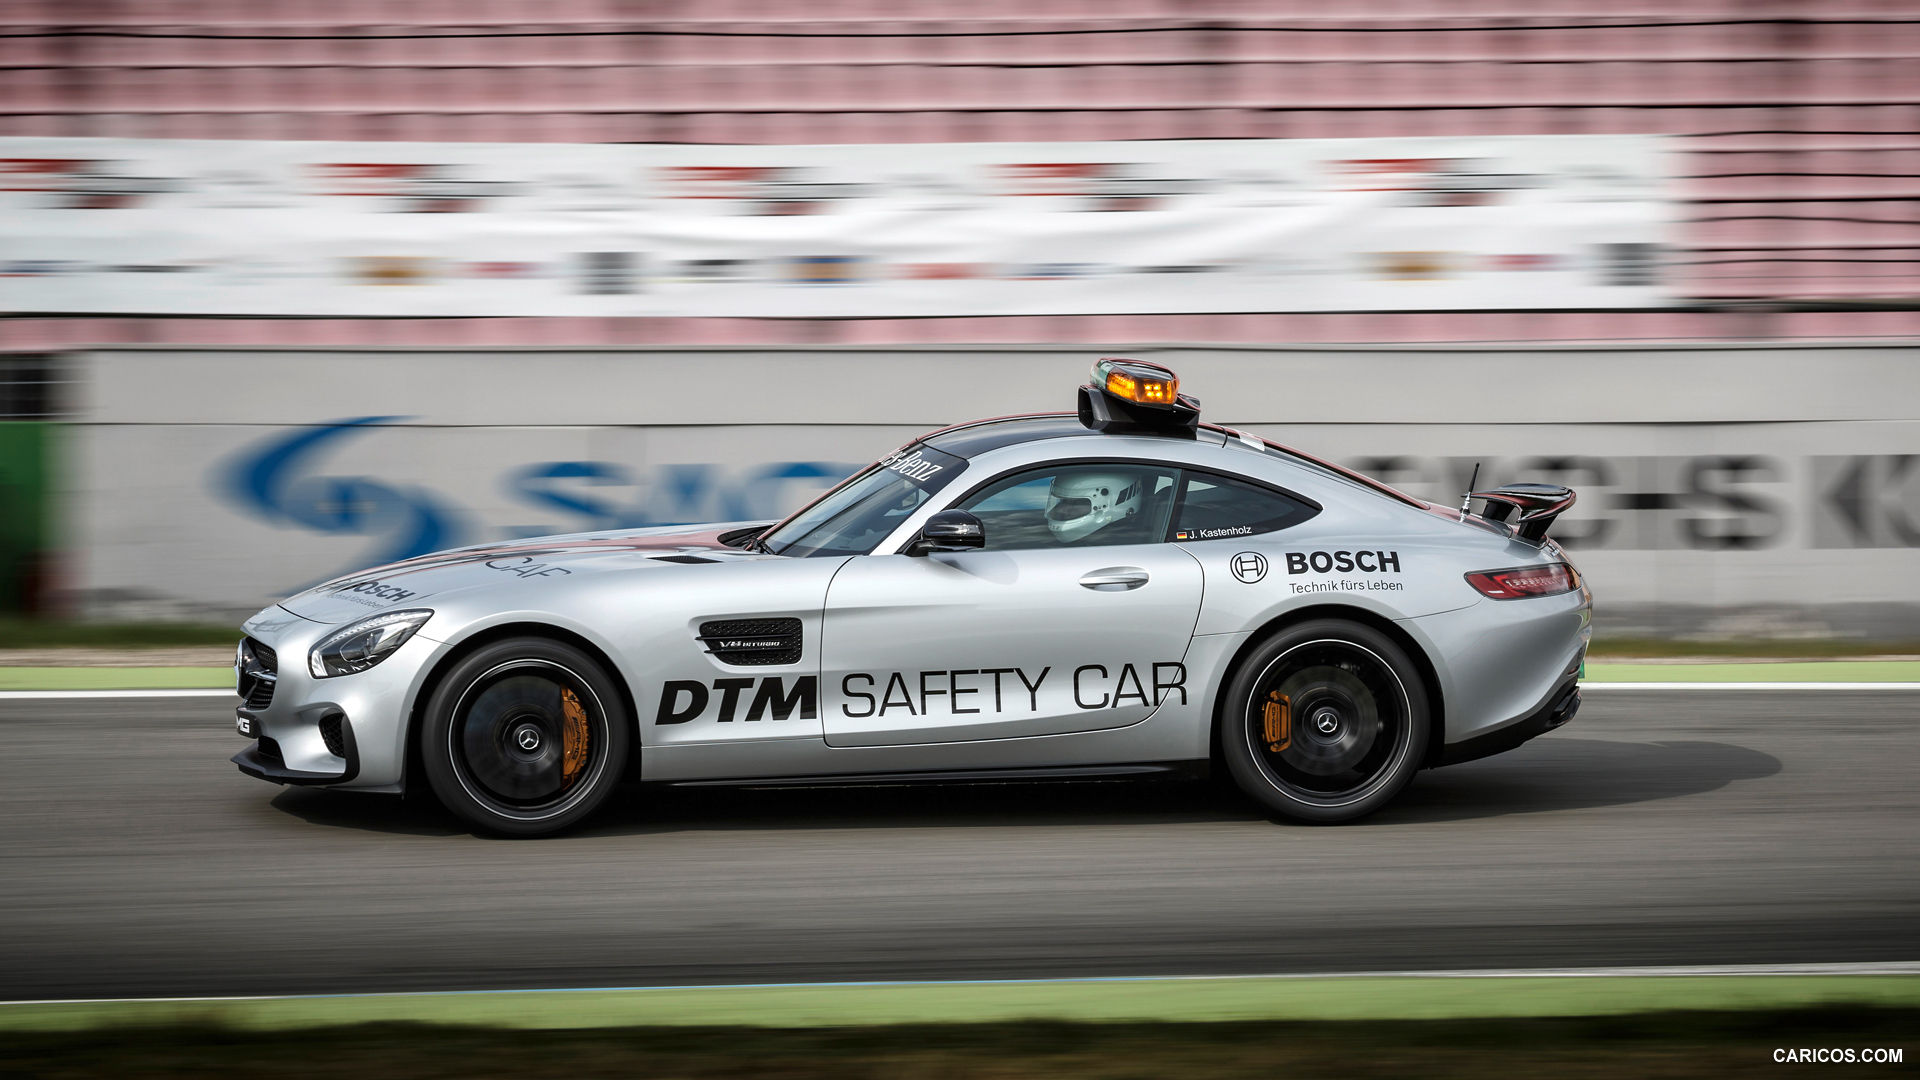 2015 Mercedes-AMG GT S DTM Safety Car  - Side, #9 of 16